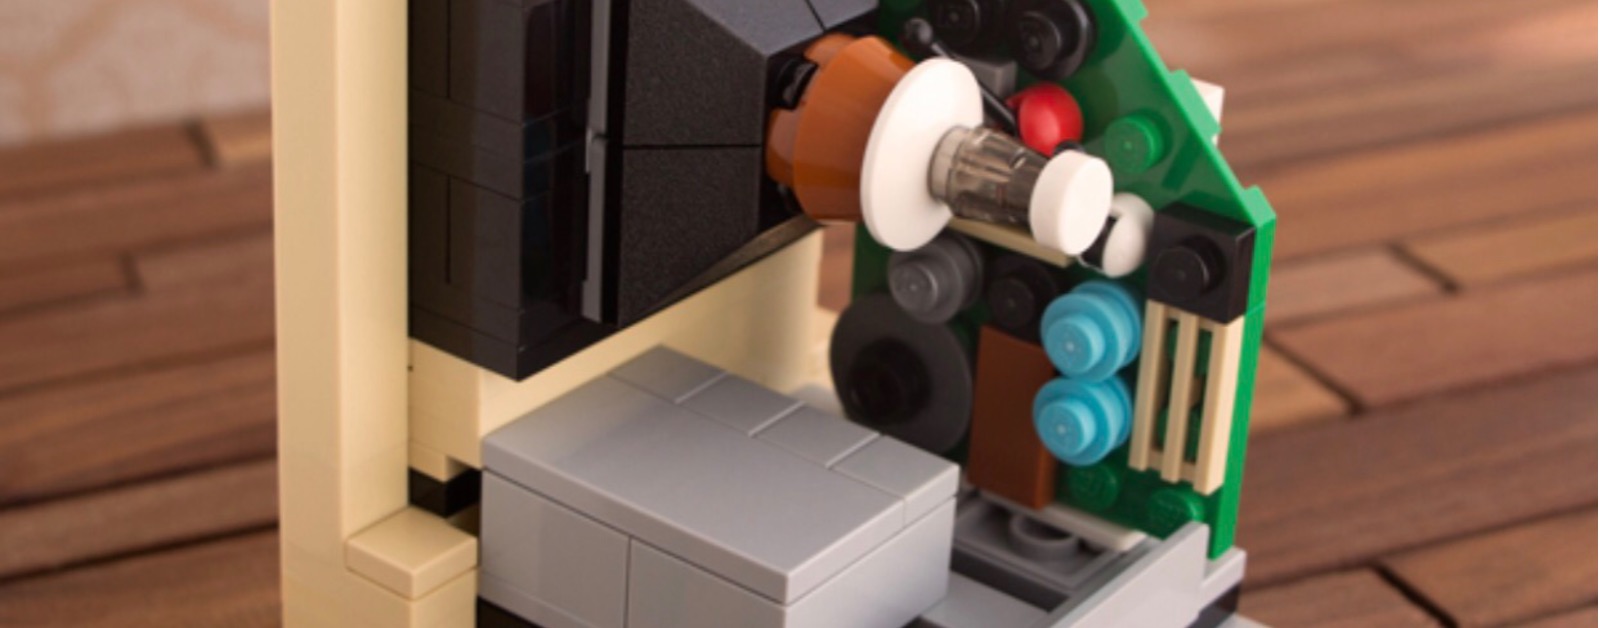 Lindo Lego Mac está listo para que lo construyas